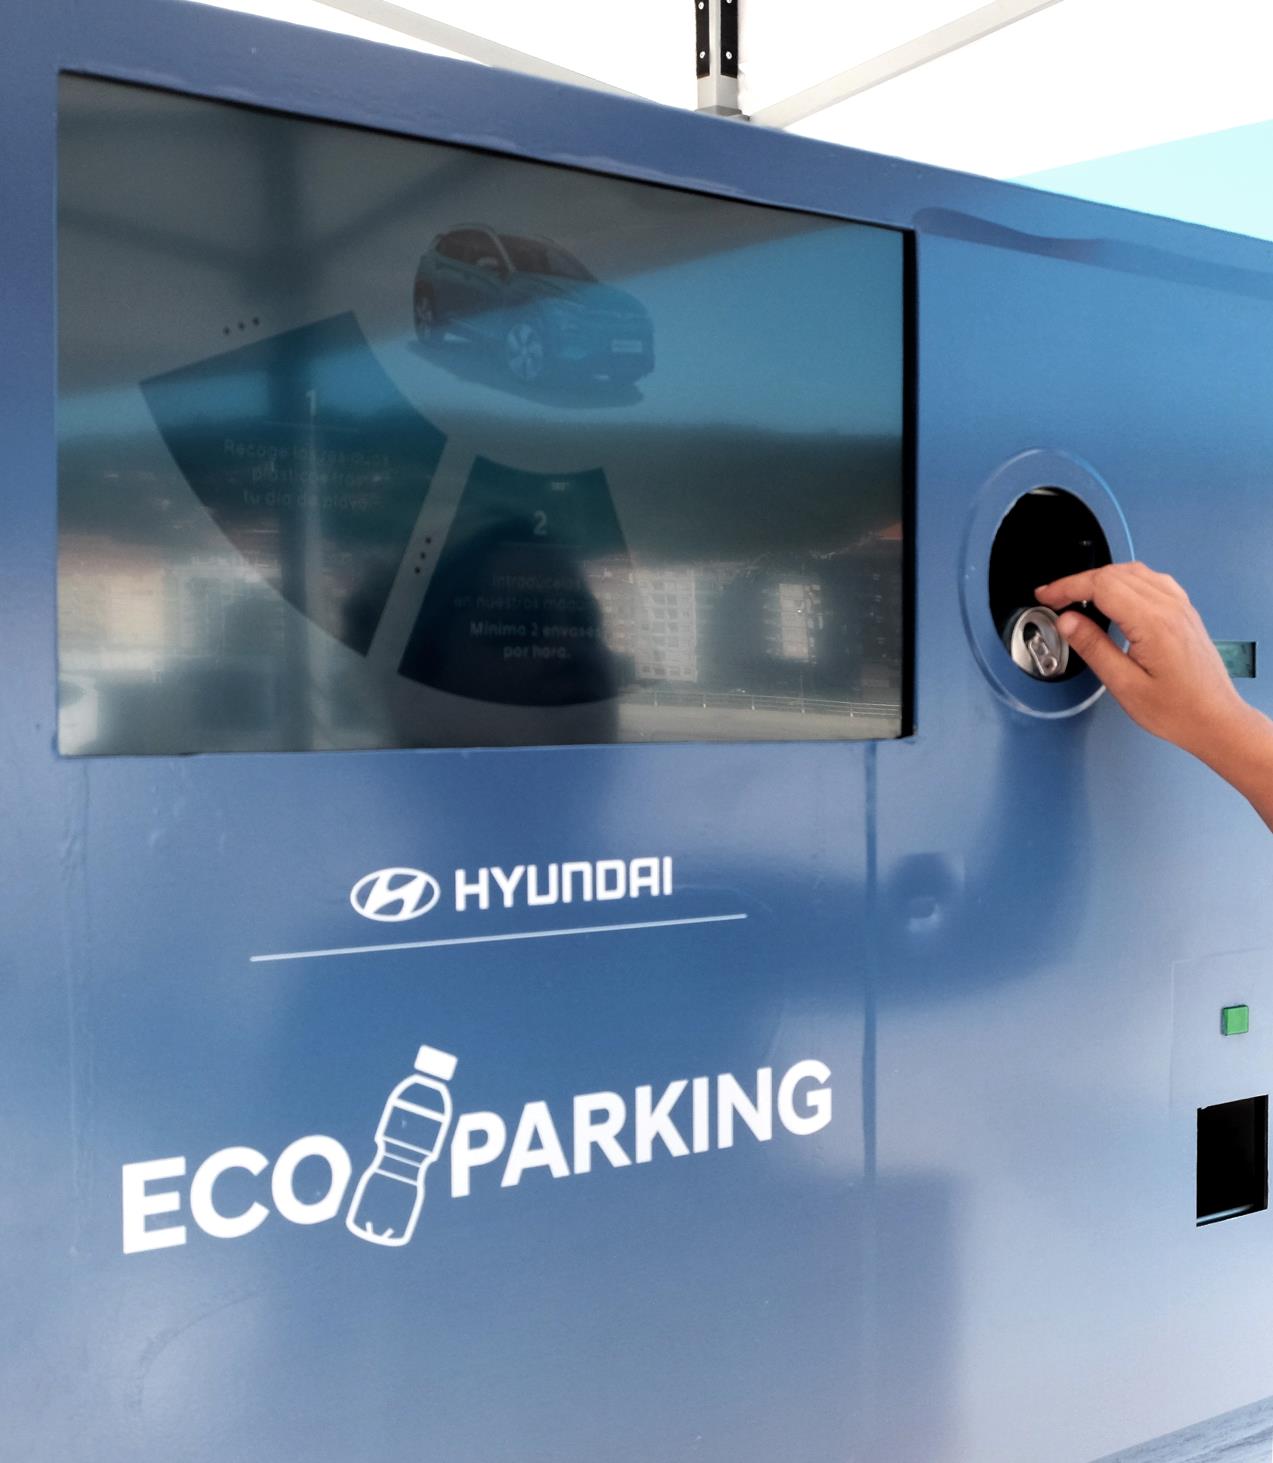 Primer Parking que se paga reciclando by Hyundai